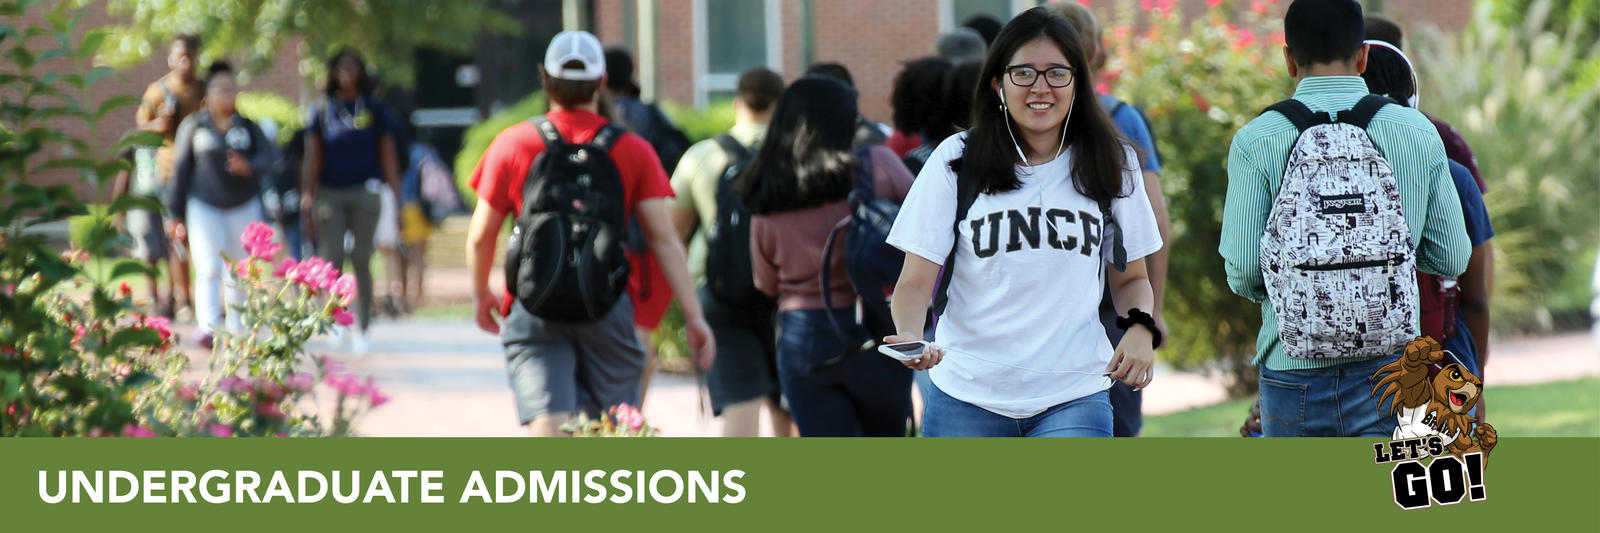 Explore Undergraduate Admissions at UNC Pembroke